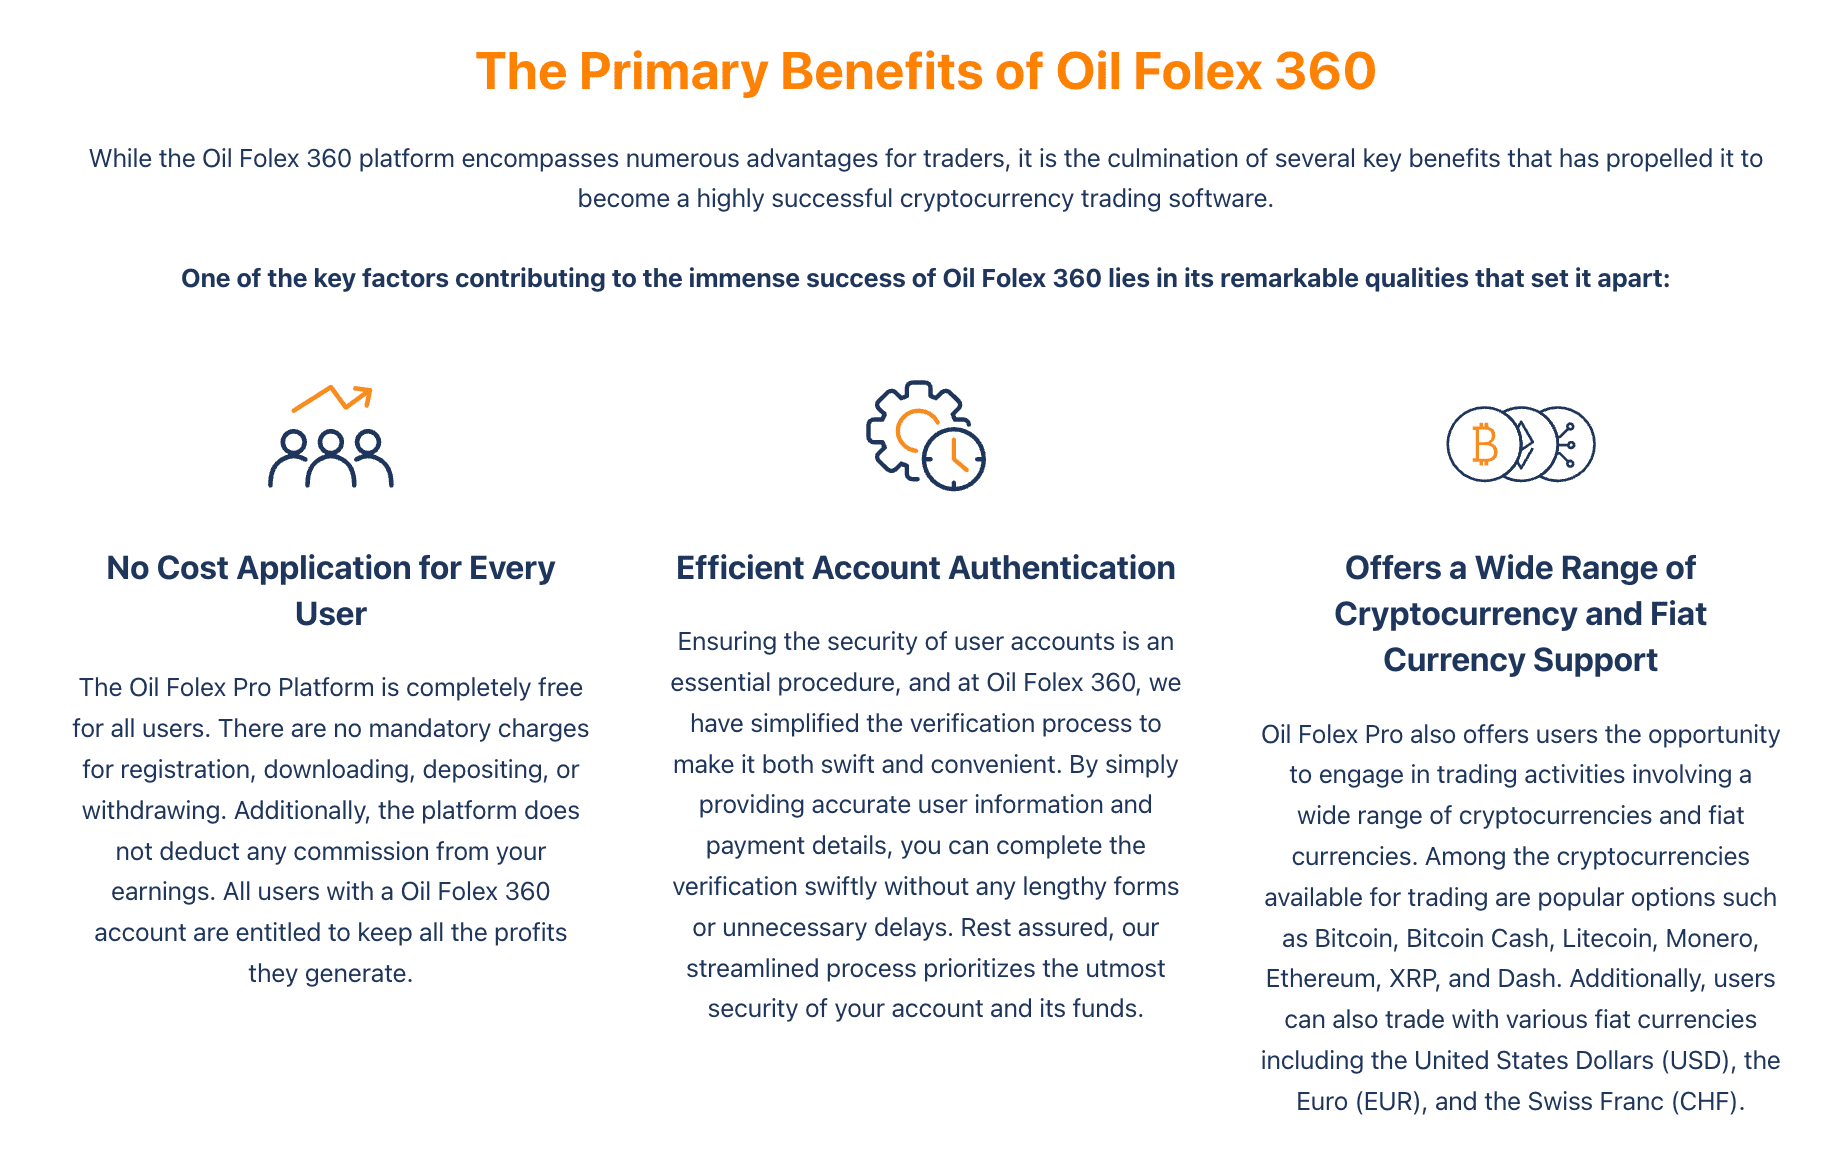 Os principais benefícios do Oil Folex 360